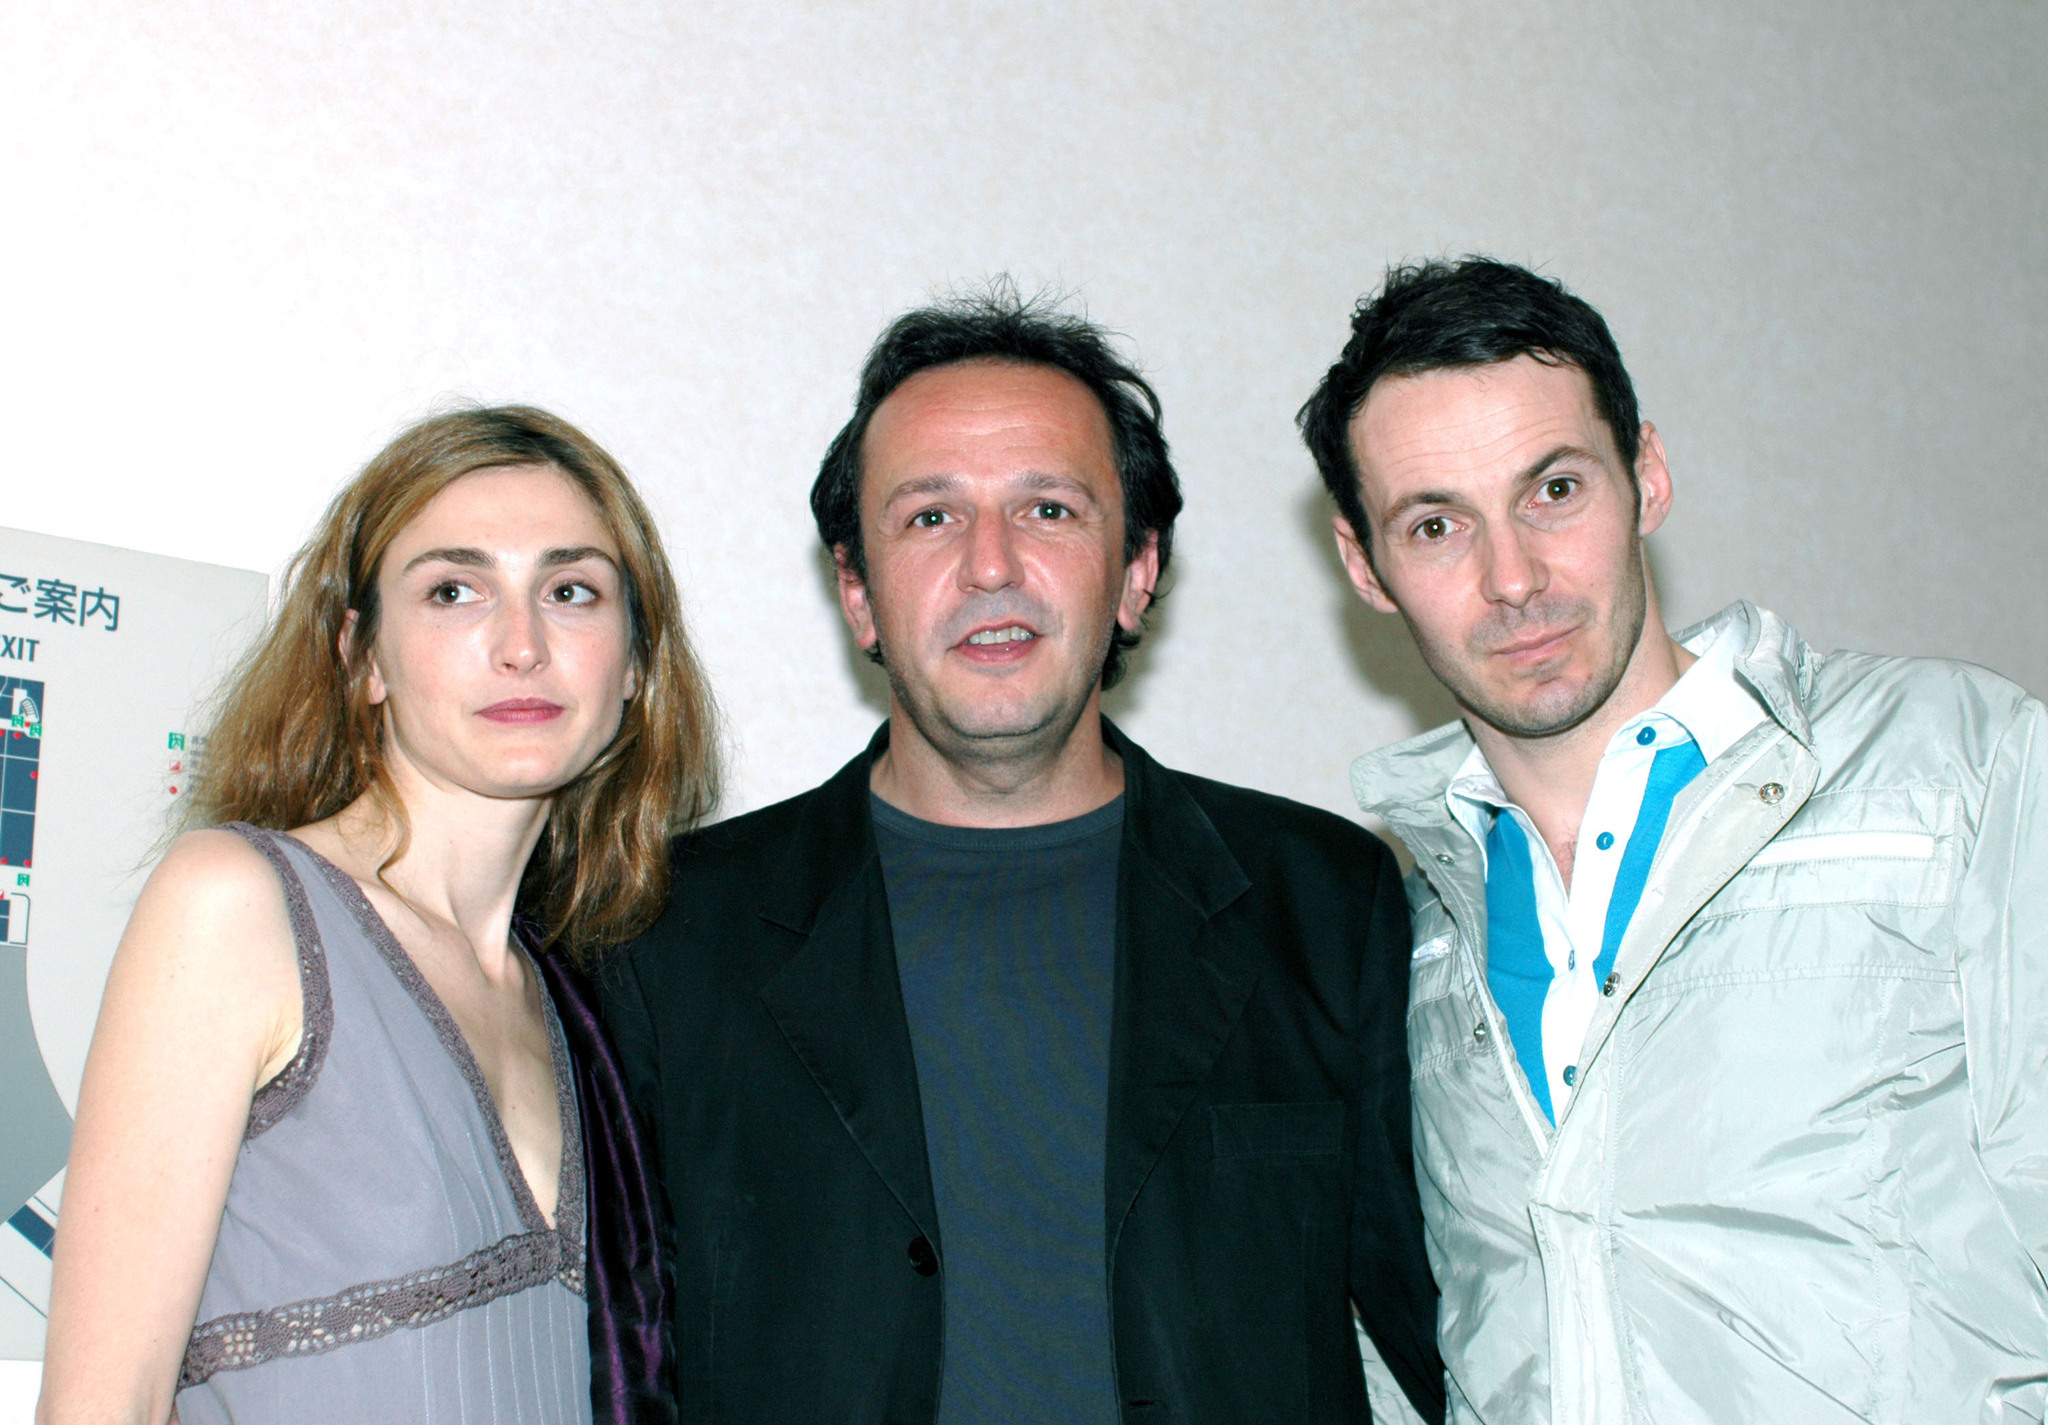 Julien Boisselier, Julie Gayet and Arnaud Viard